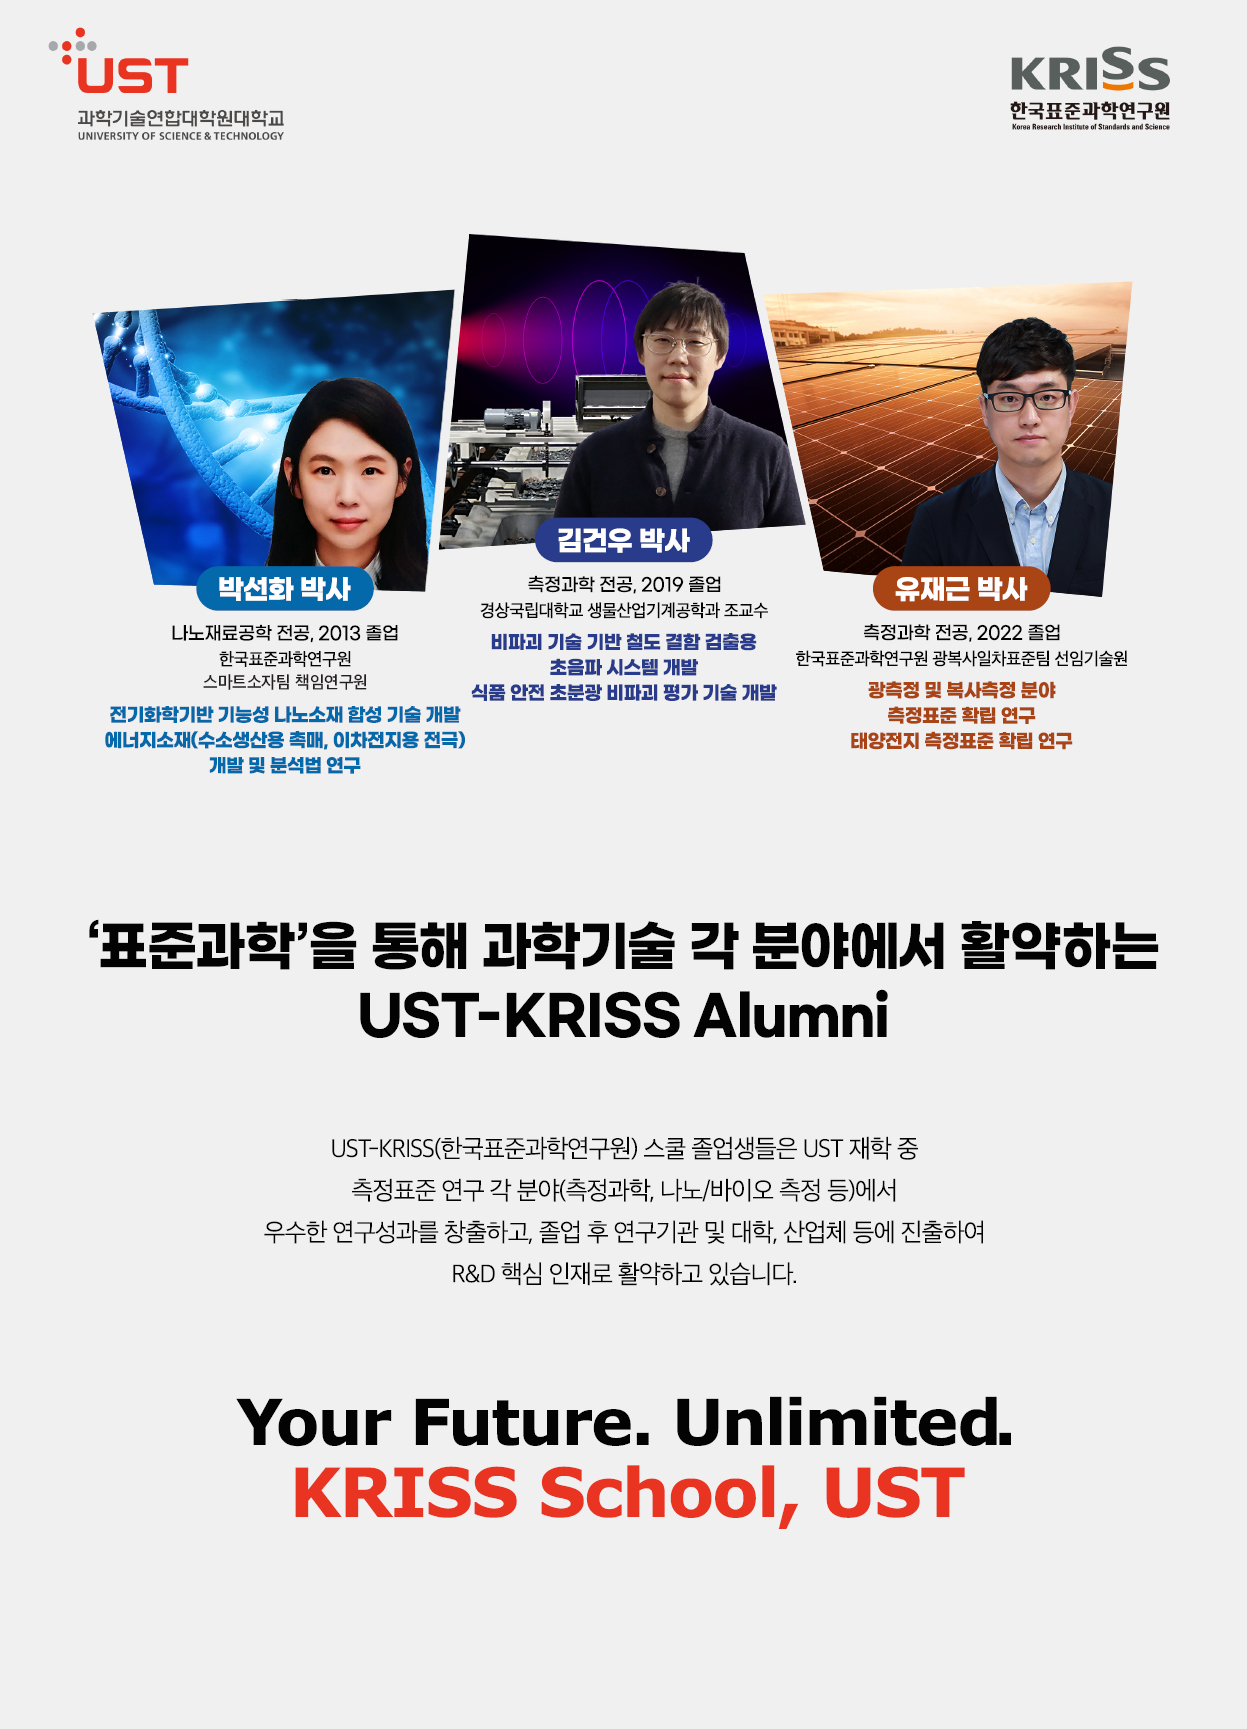 KRISS 한국표준과학연구원 스쿨 포스터로 자세한내용은 하단에 위치해있습니다.